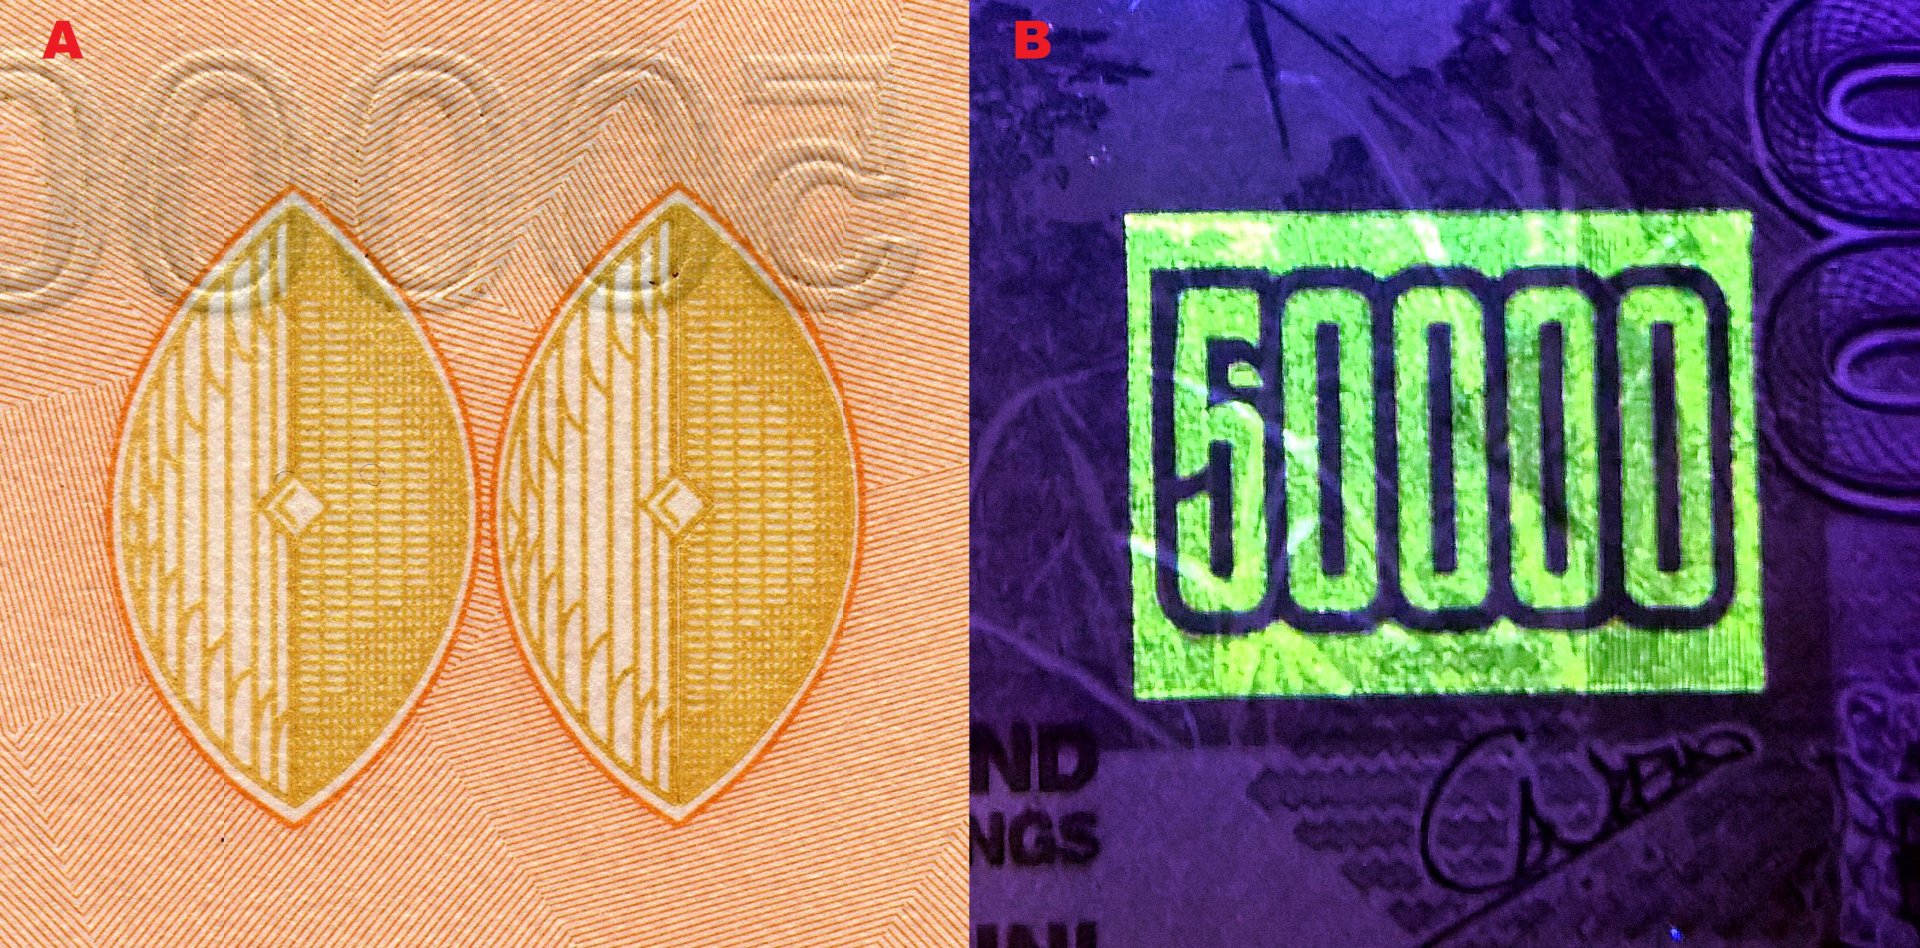 Obrázek 5. A) Soutisková značka ve tvaru dvou štítů "Ganda". B) UV nominální pole.